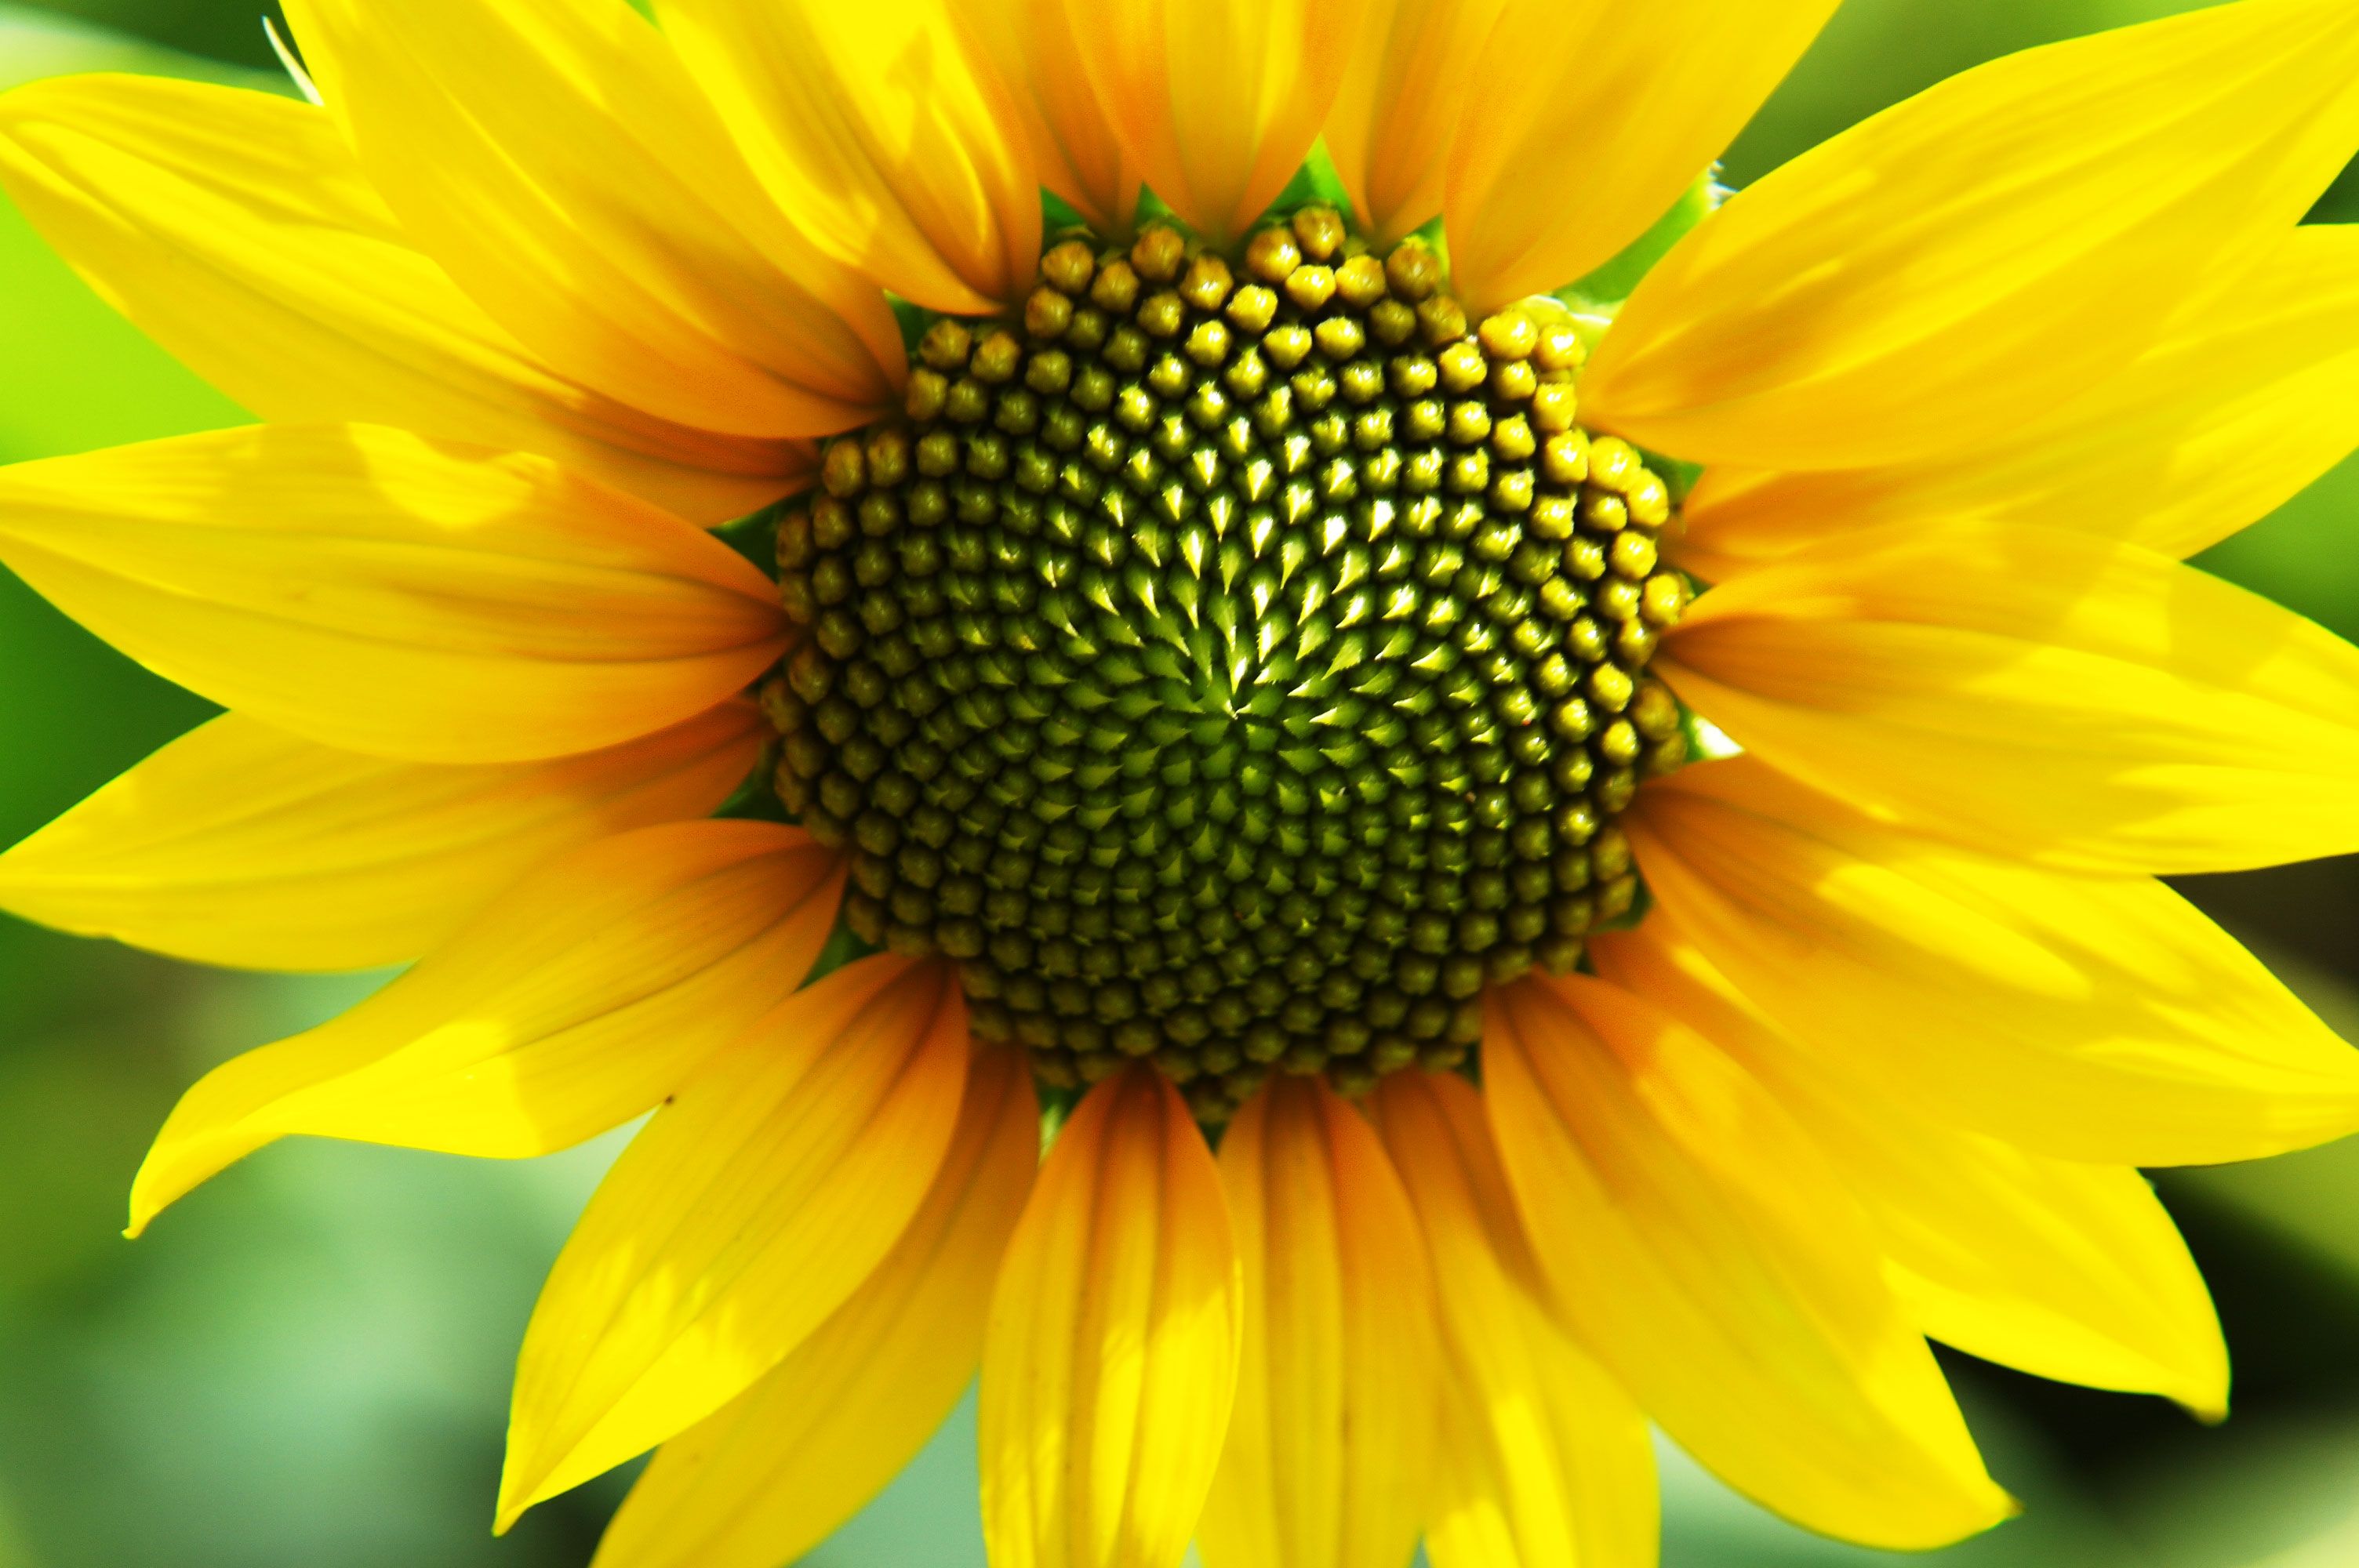 Resultado de imagem para sunflower macro | Sunflowers | Pinterest ...